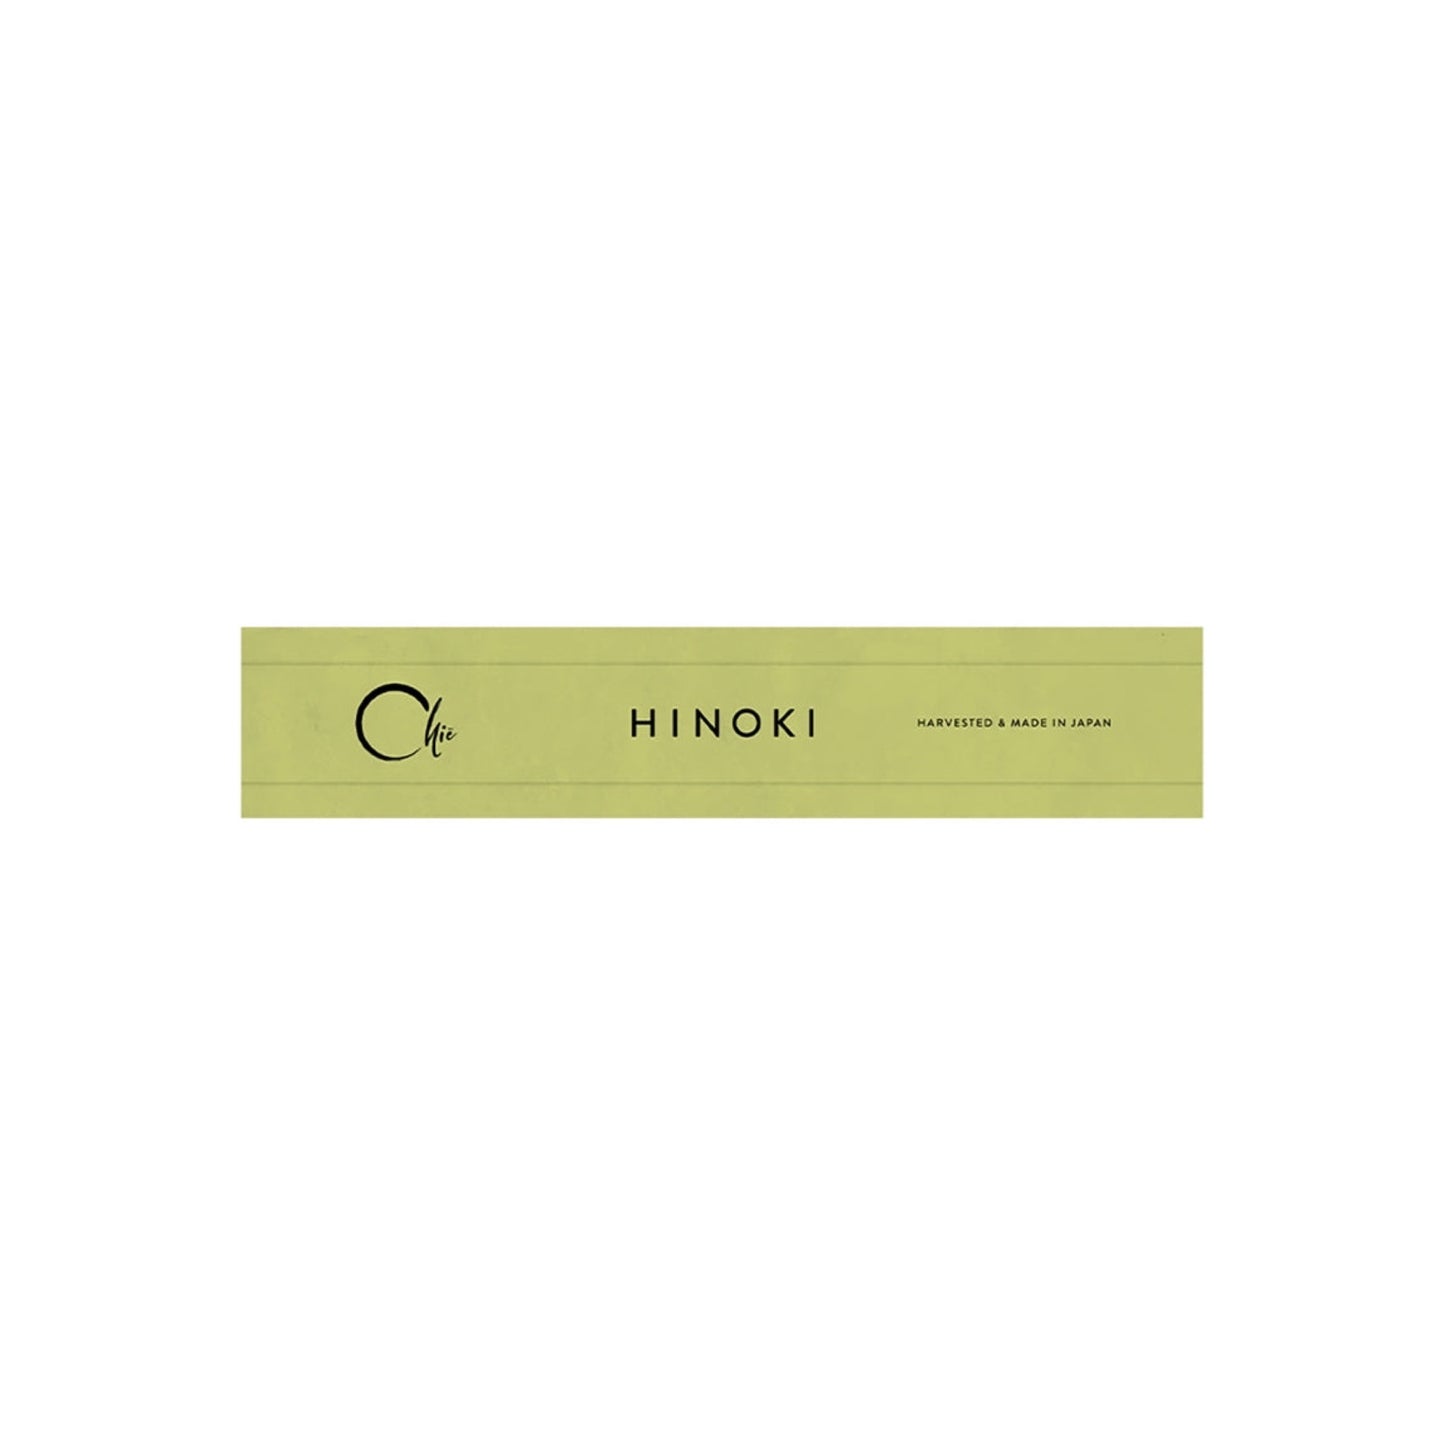 nippon kodo / chië incense - hinoki